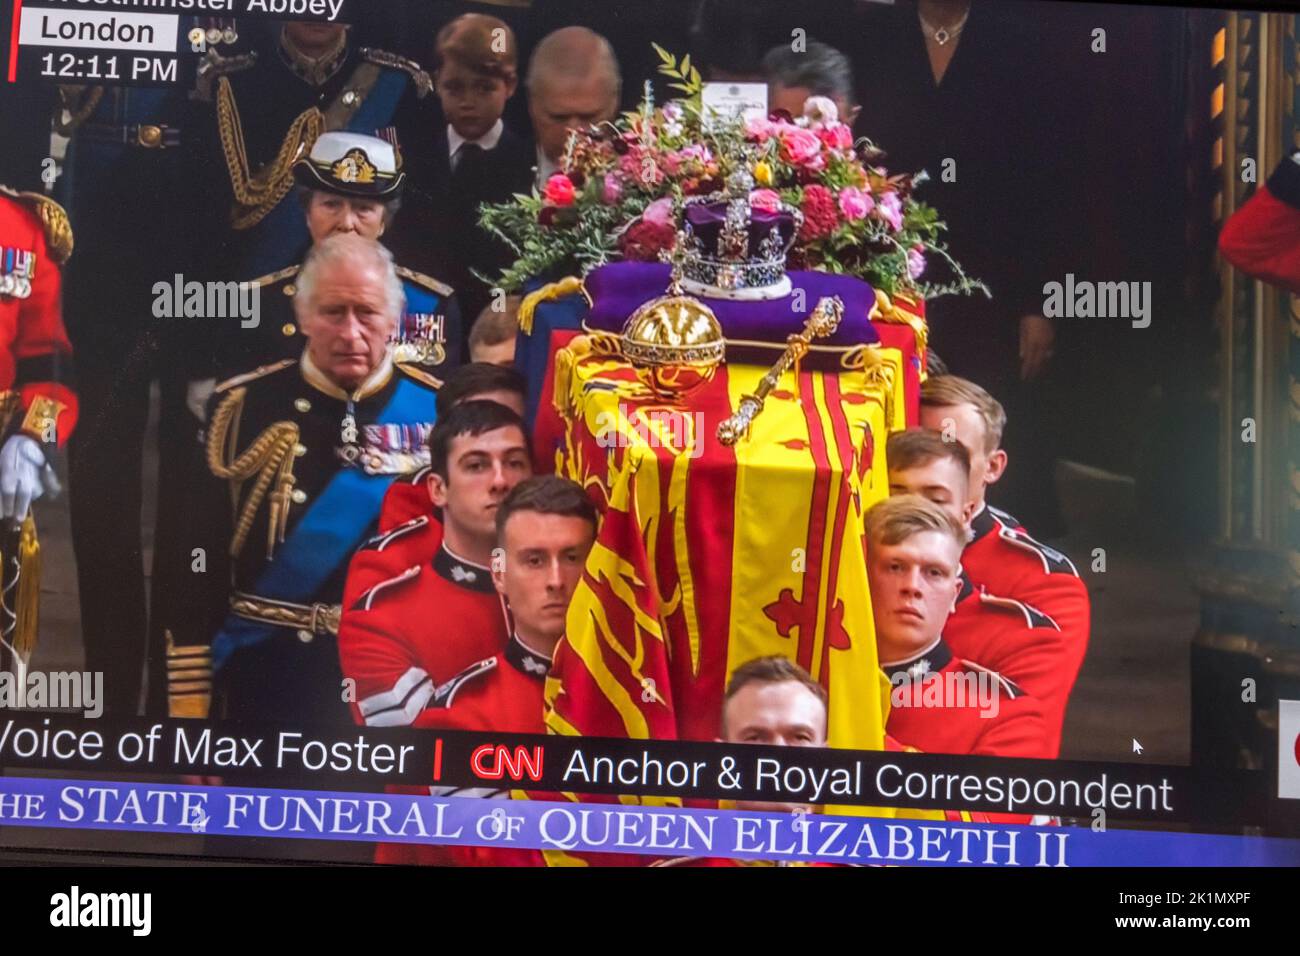 Le site de CNN News à la fin des funérailles de la reine Elizabeth II à Londres le 19th septembre 2022. Banque D'Images